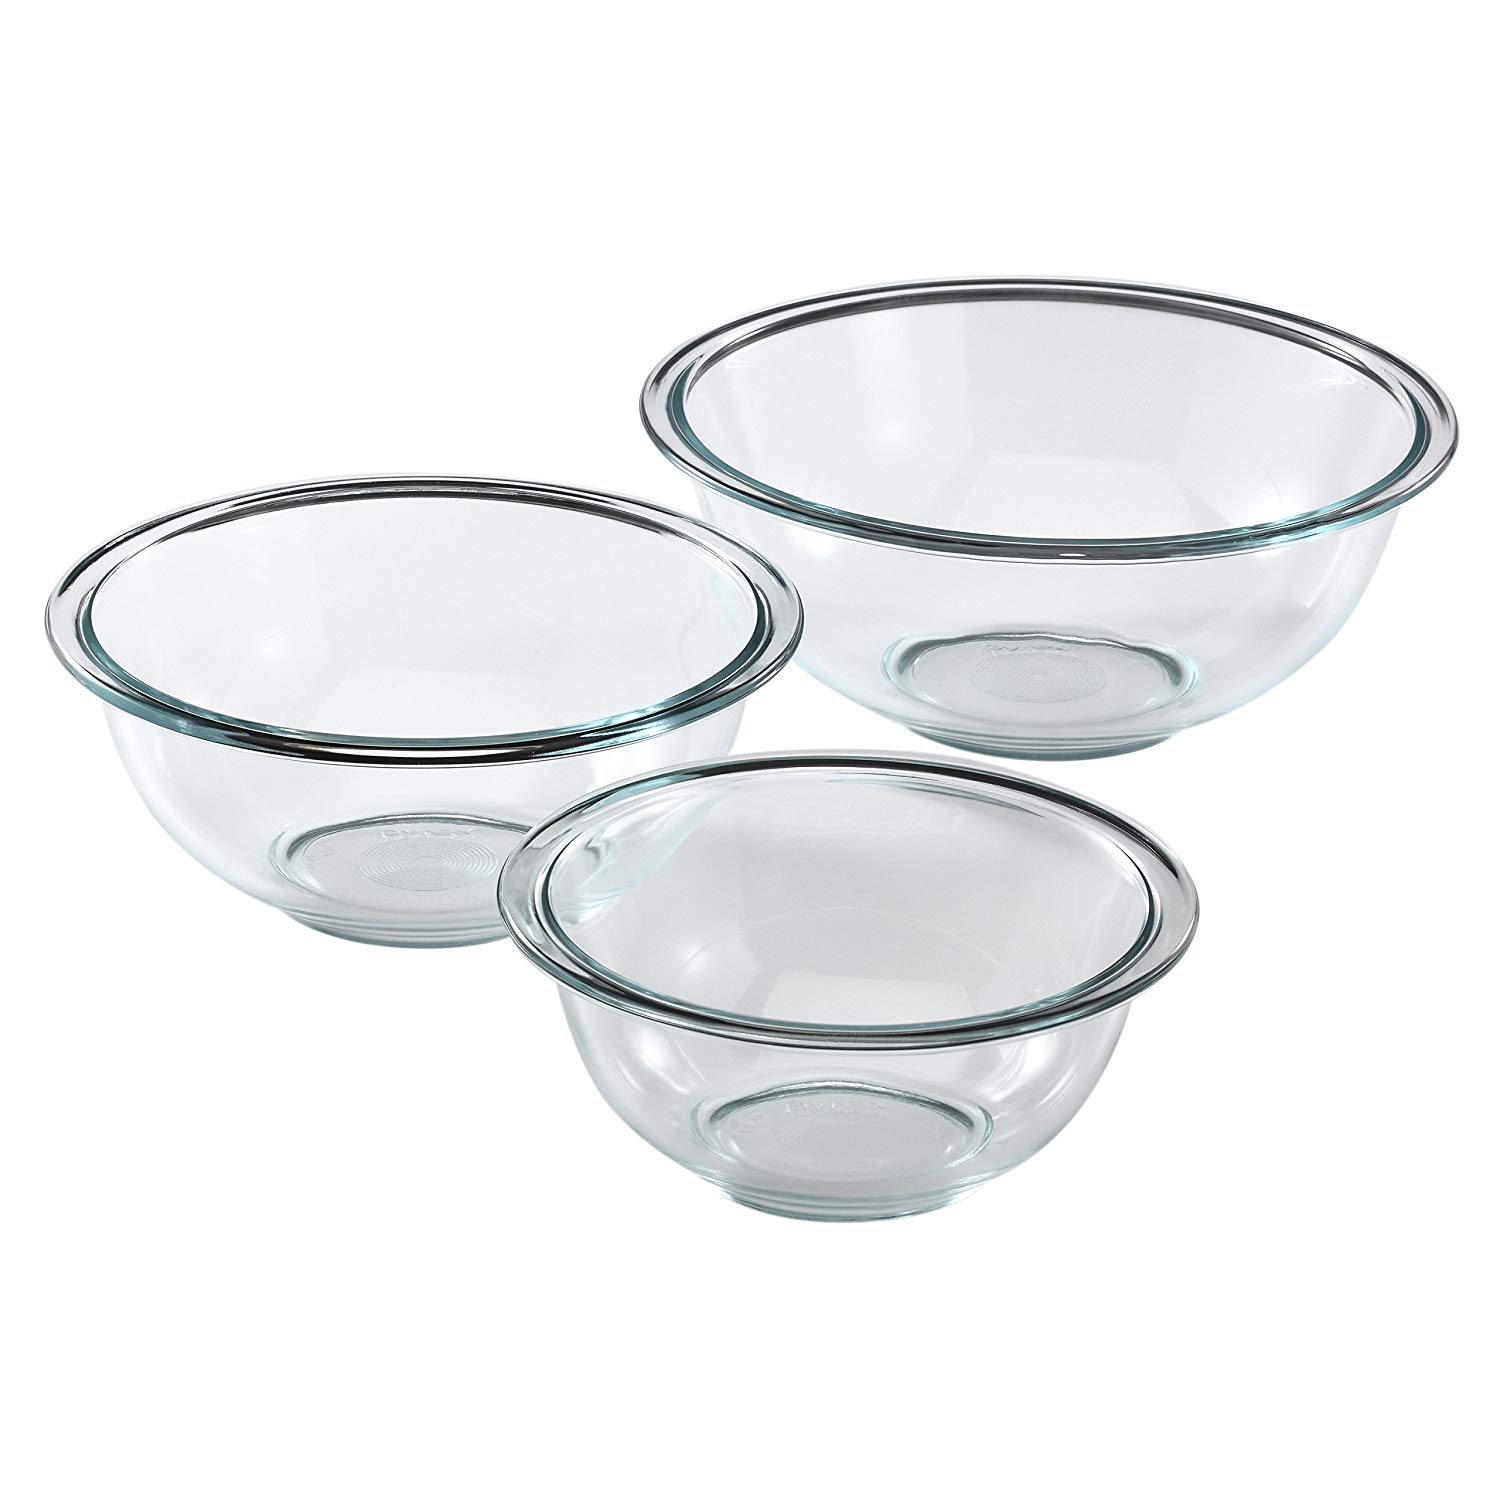 Pyrex Glass Mixing Bowl Set (3-Piece) $12.95 (REG $43.00)